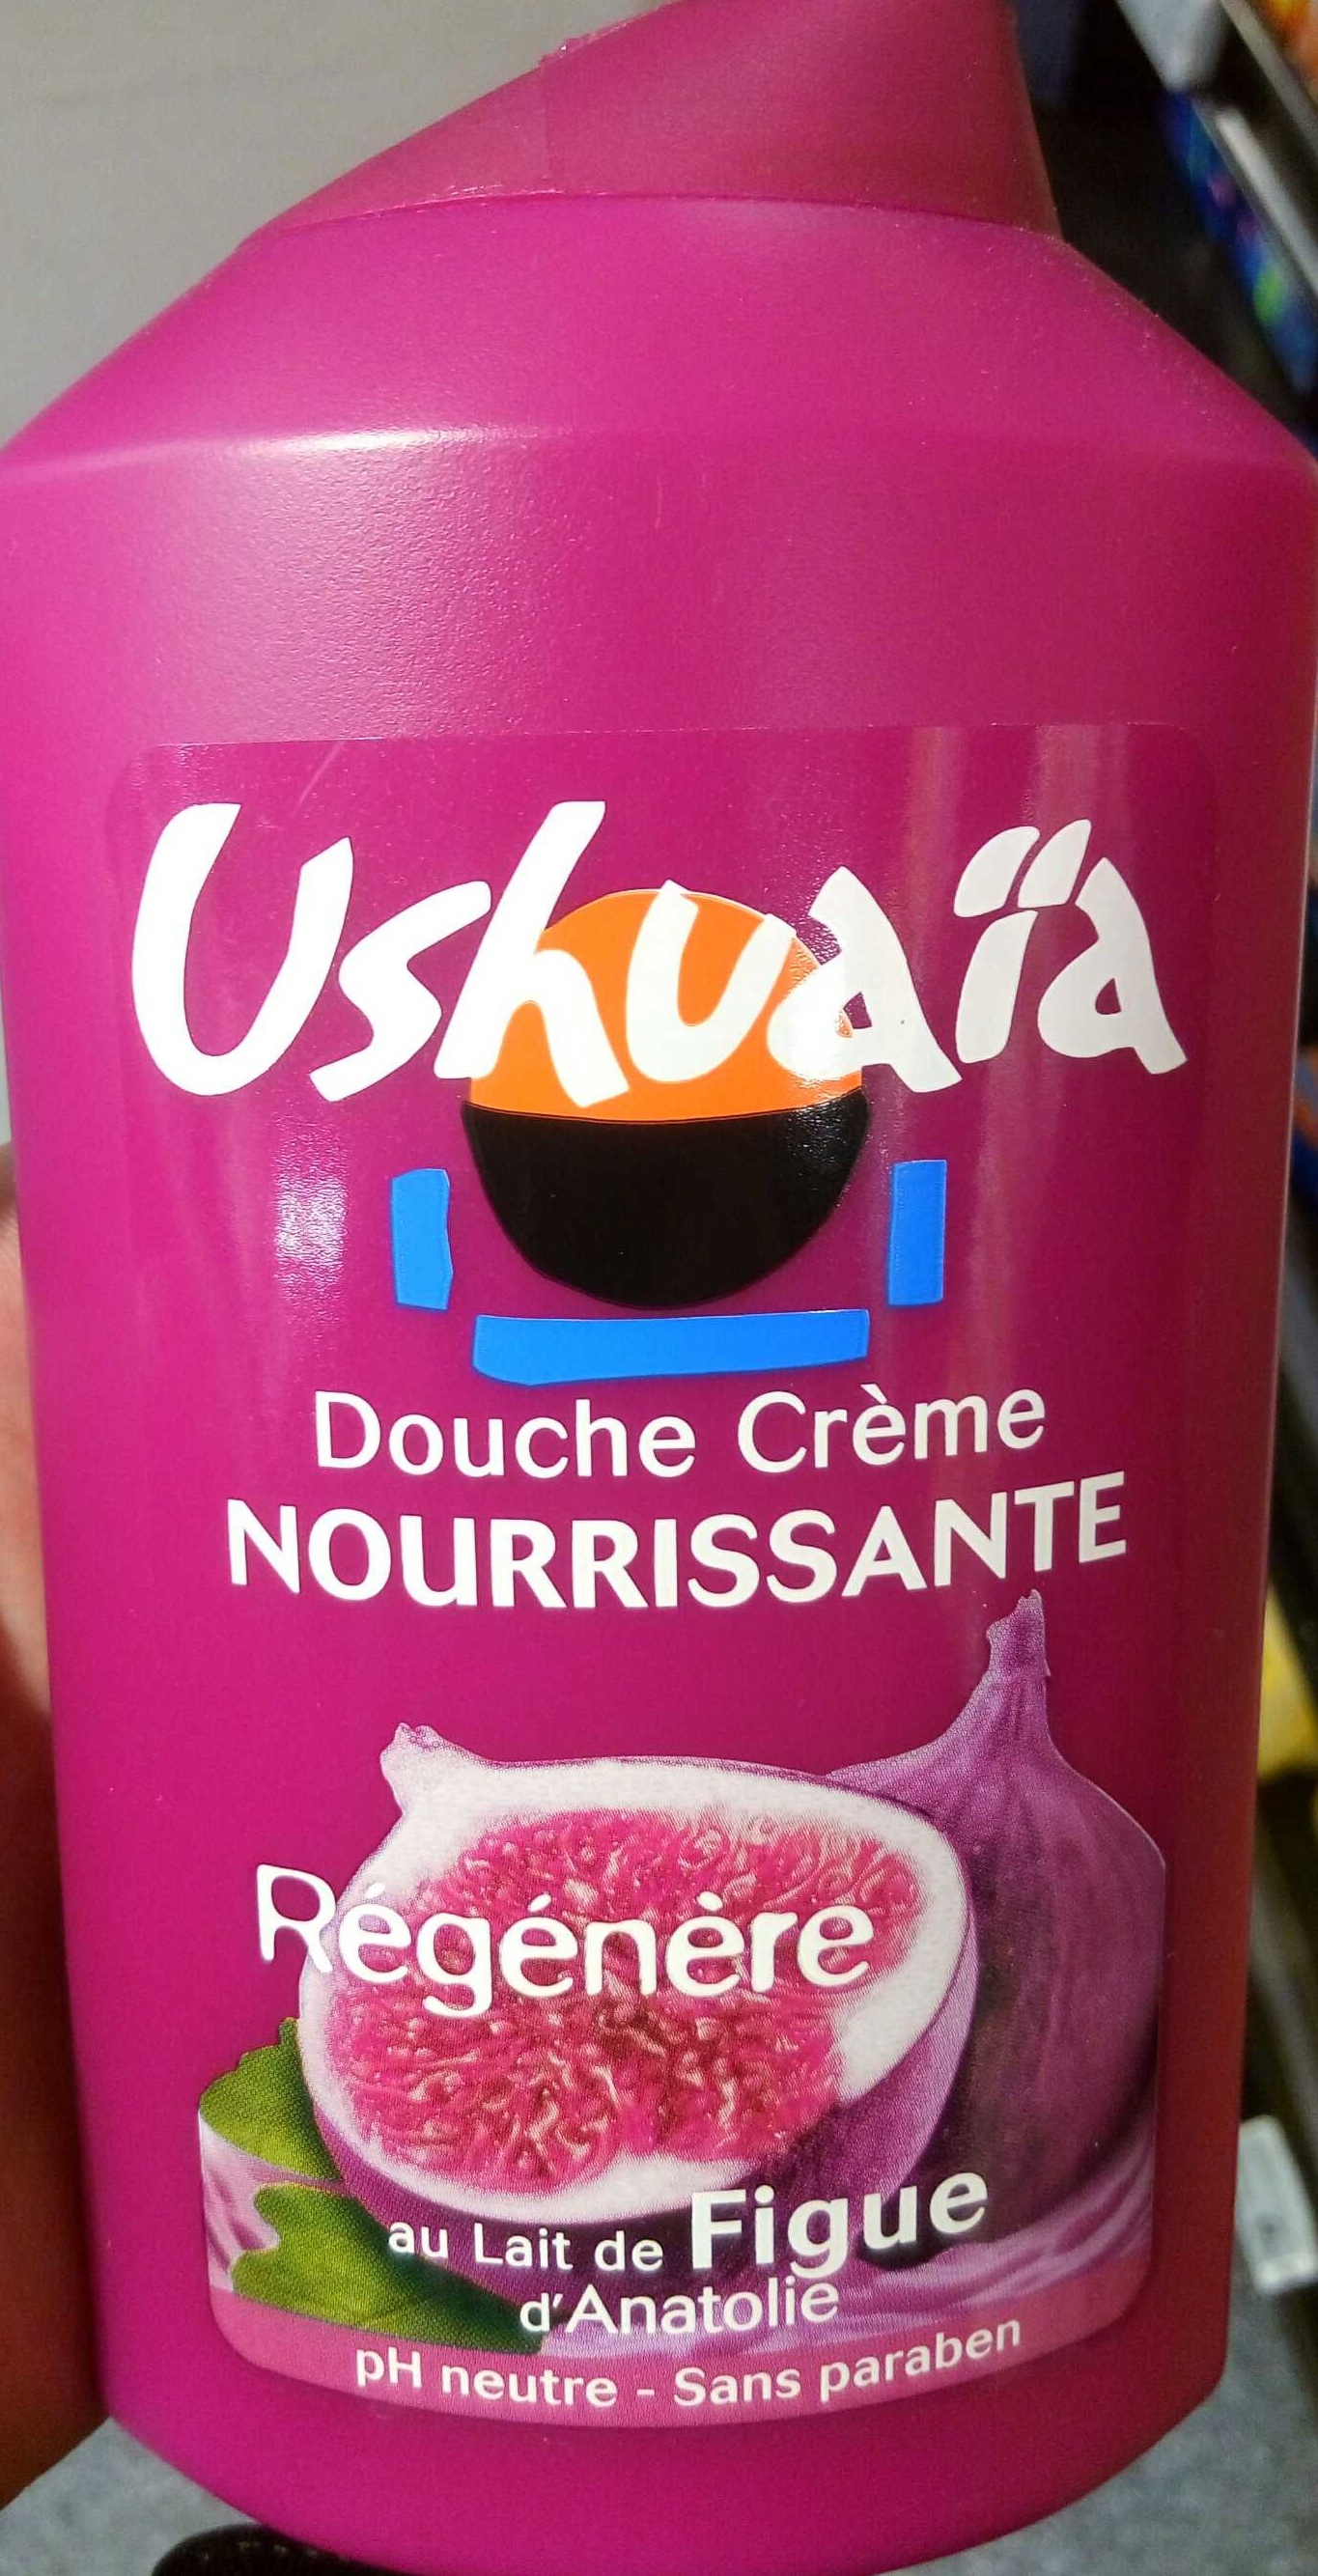 Douche Crème Nourissante au lait de Figue d'Anatolie - Produit - fr